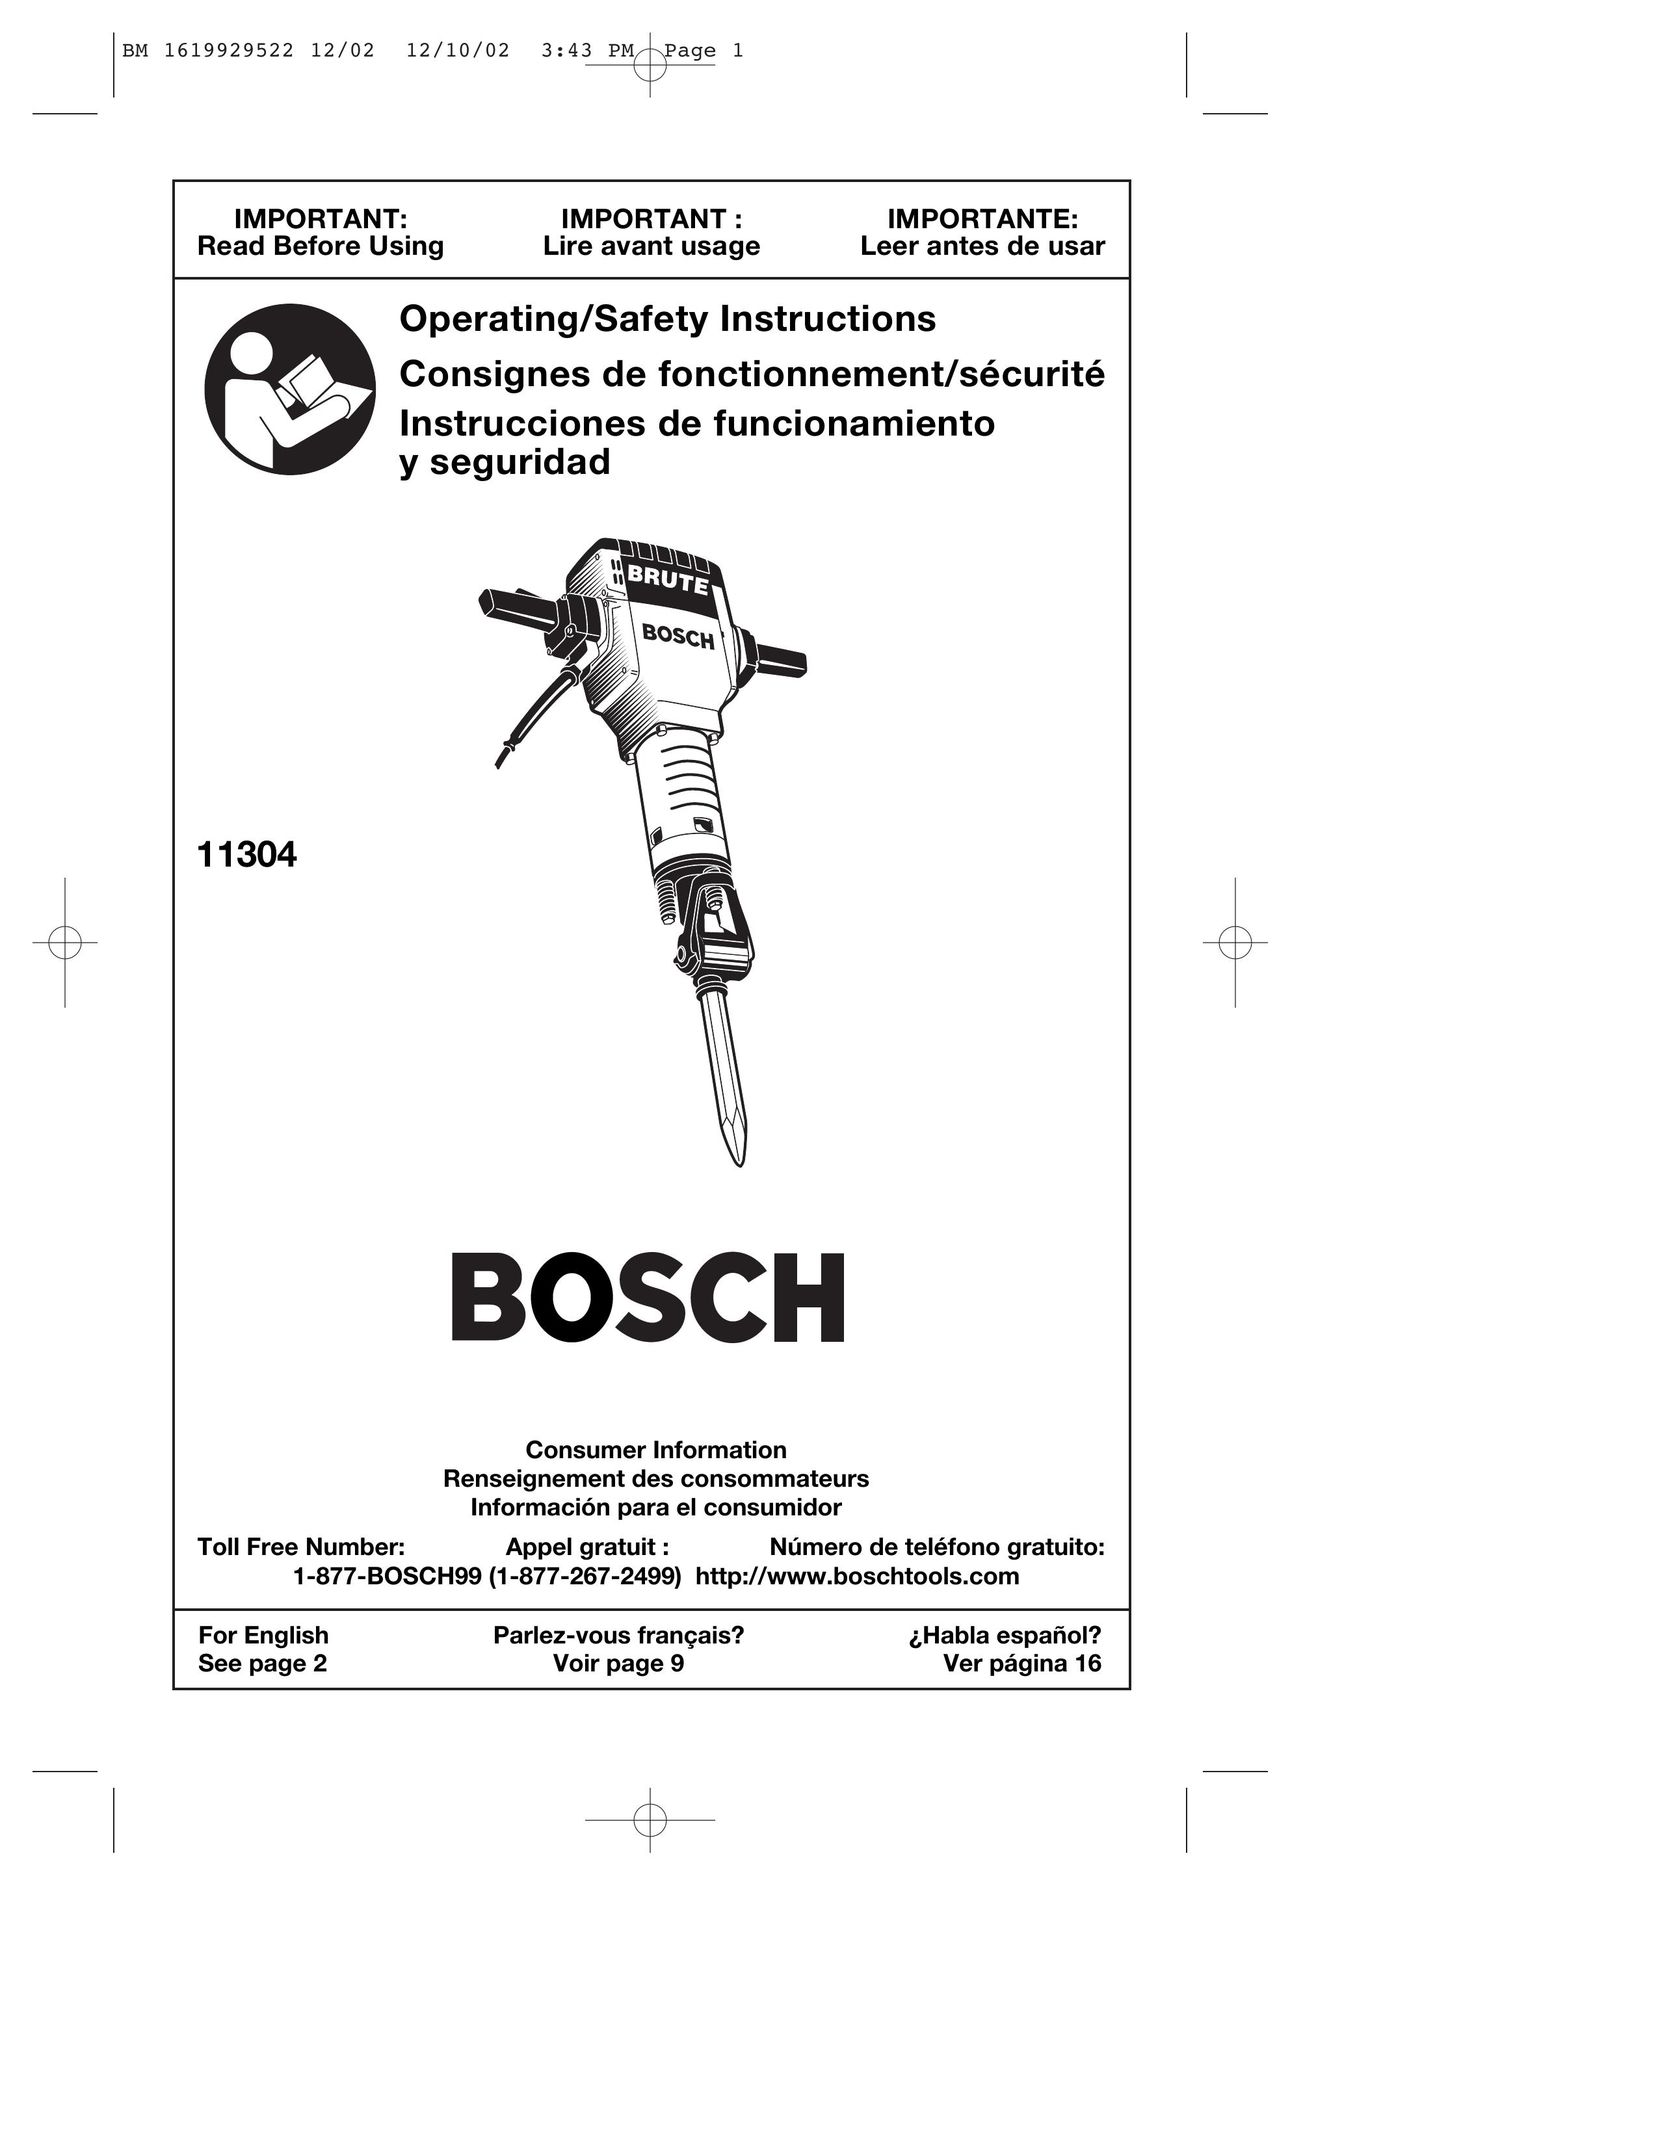 Bosch Power Tools 11304 Power Hammer User Manual